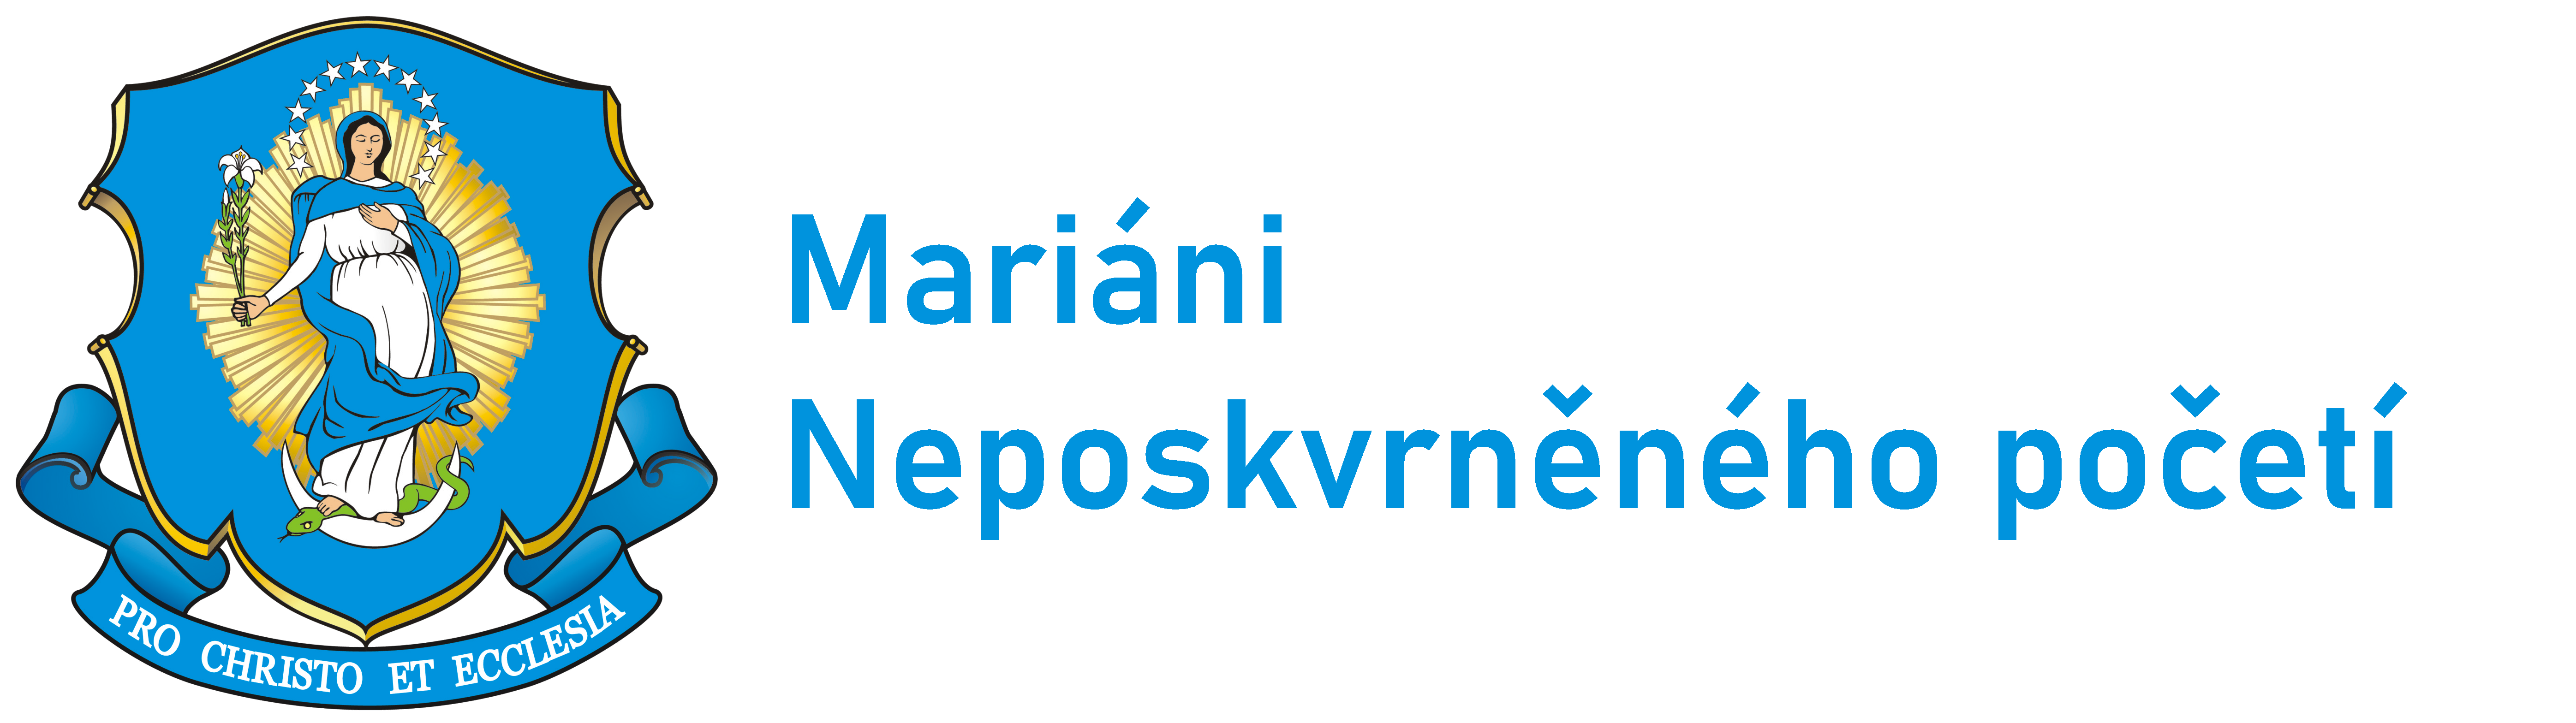 Logo Poutní místo Hrádek - Mariáni ČR